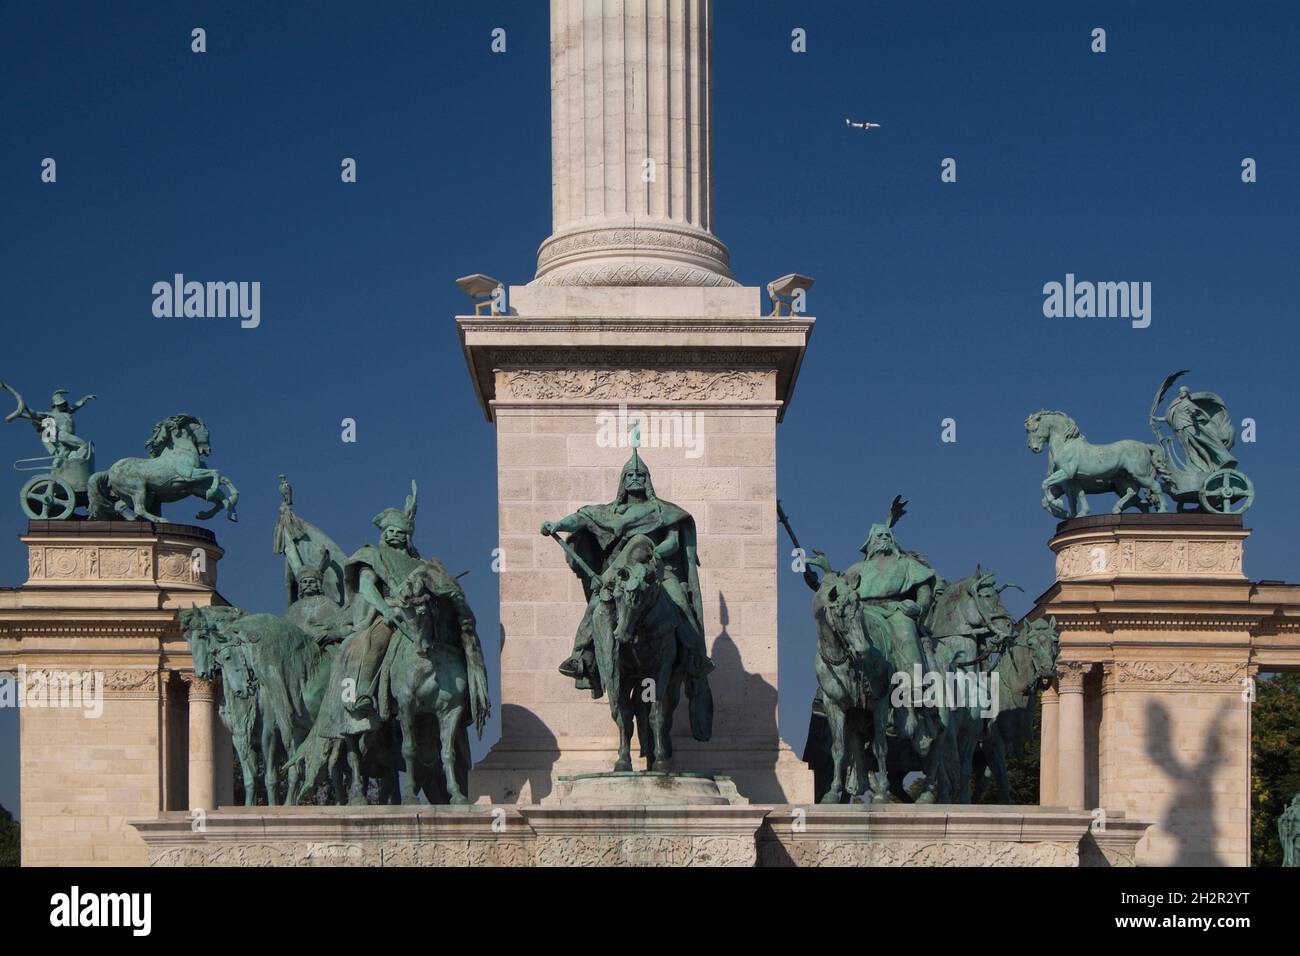 Ungarn, Budapest, Platz der Helden, Hösök tere, Millenniumsdenkmal mit Reiterstatuen des Fürsten Árpád, Millennium emlékmü | Hungary, Budapest, the He Stock Photo